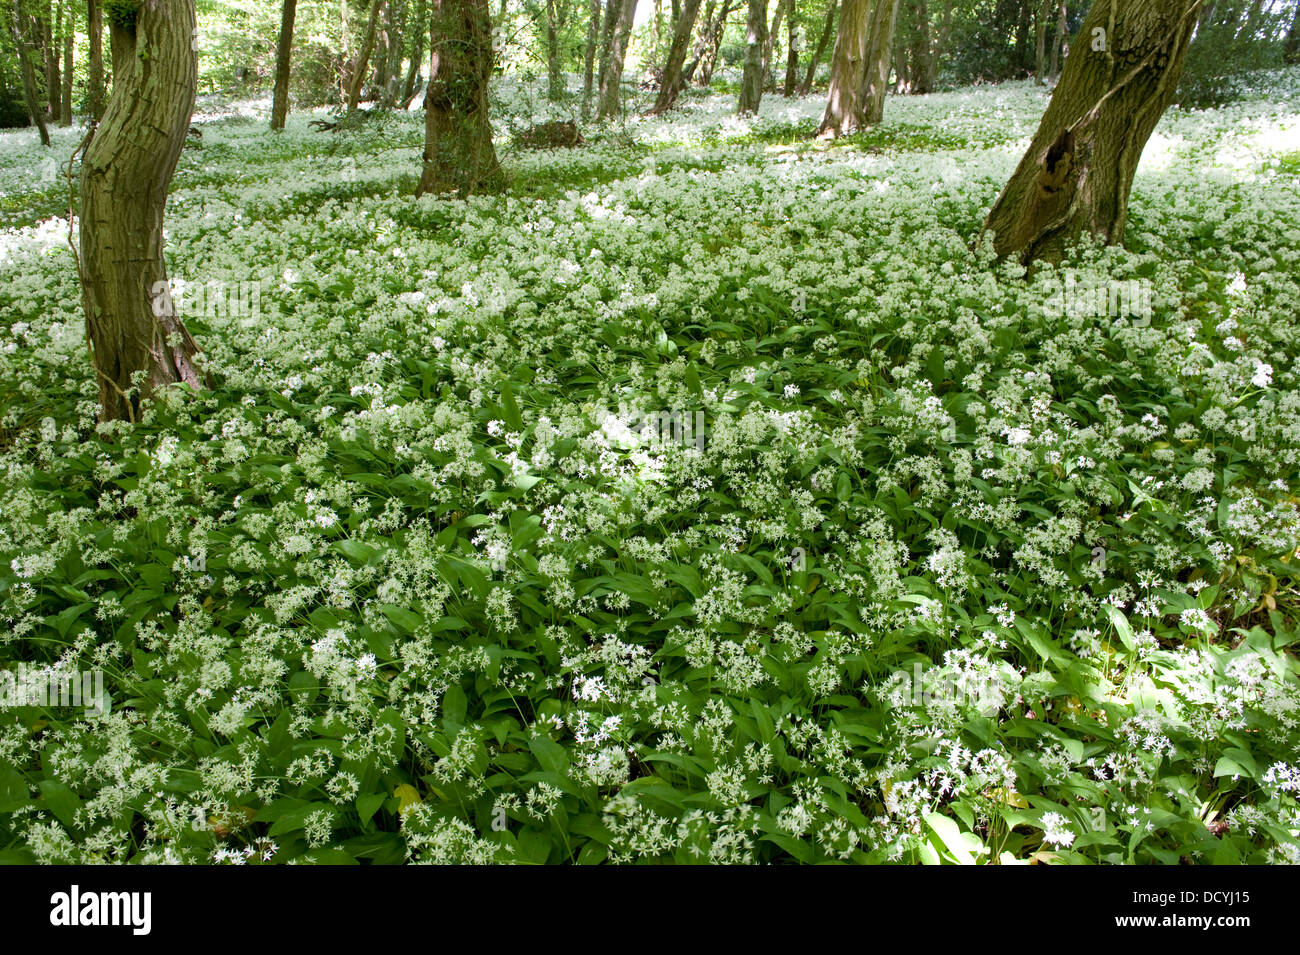 L'ail des ours Allium ursinum Ramsons Kent UK Banque D'Images